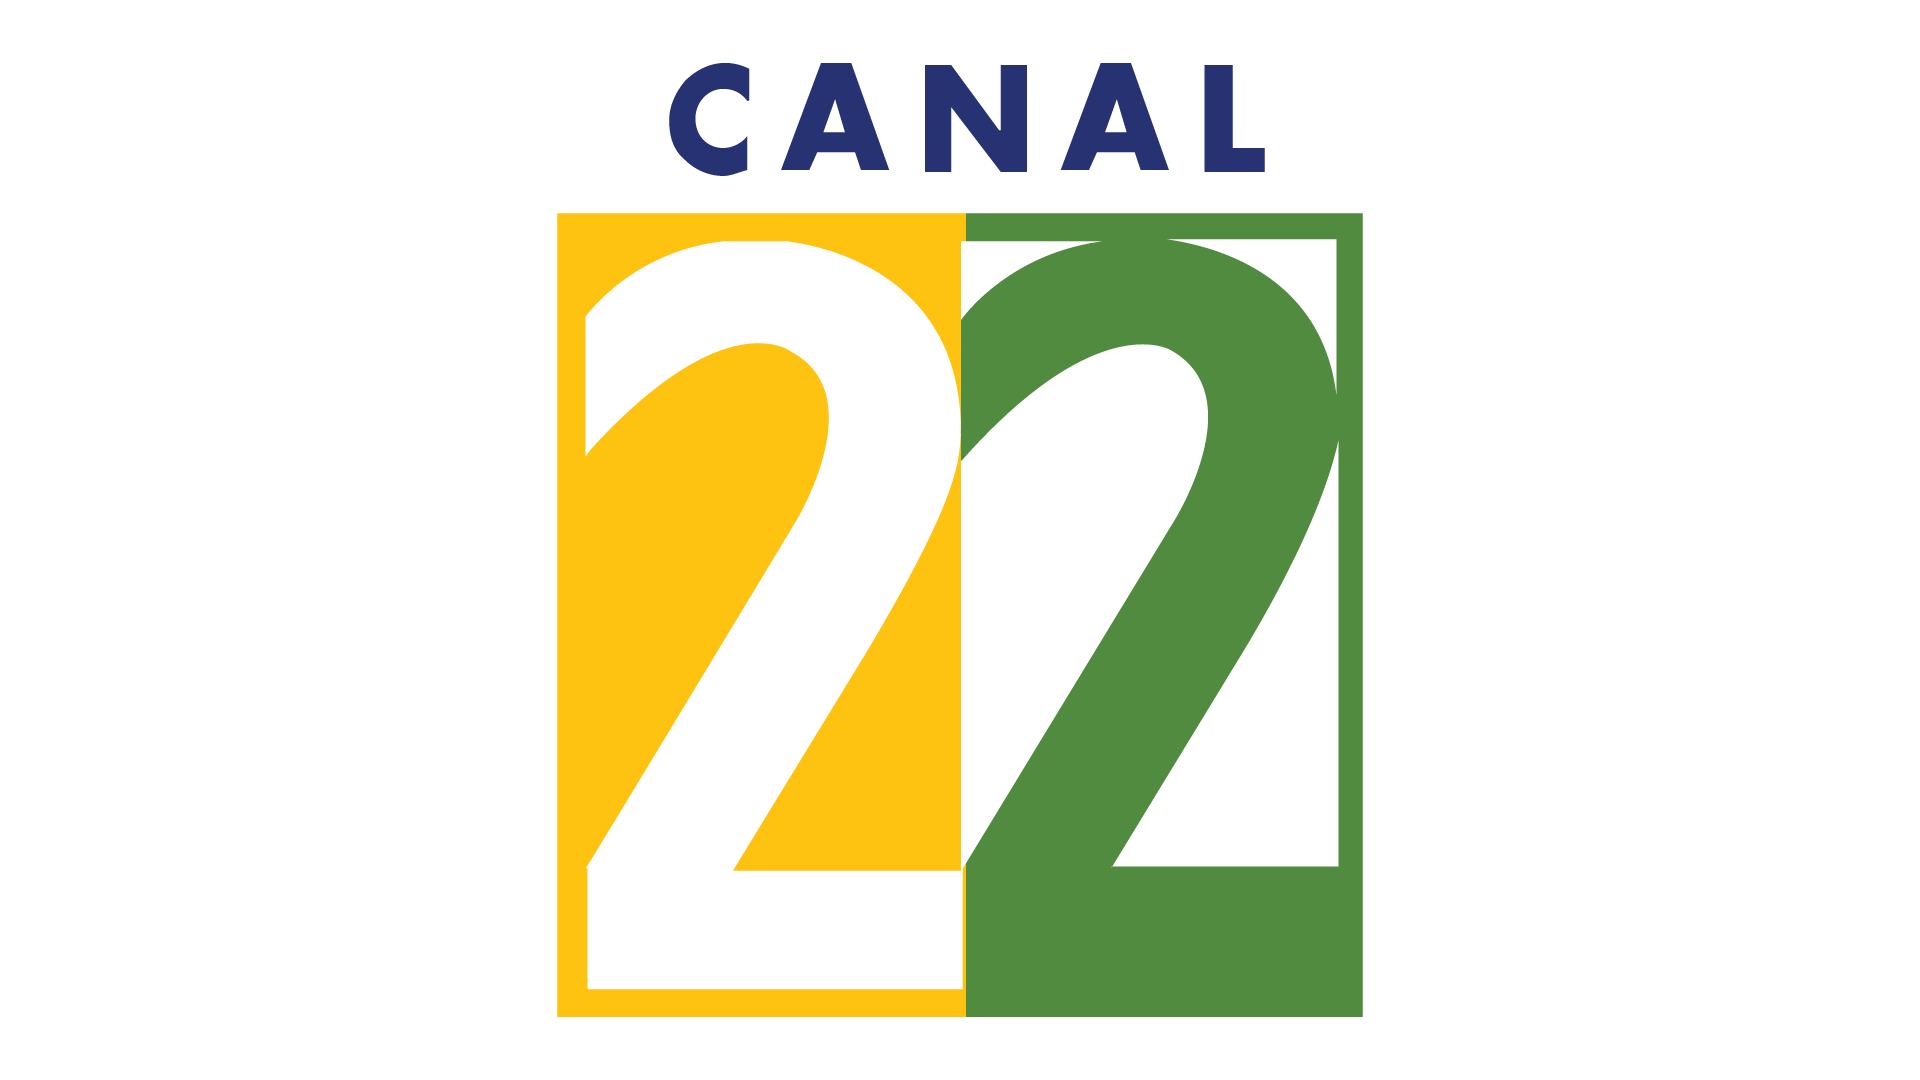 Canal-22-Mexico-en-vivo--Mexico